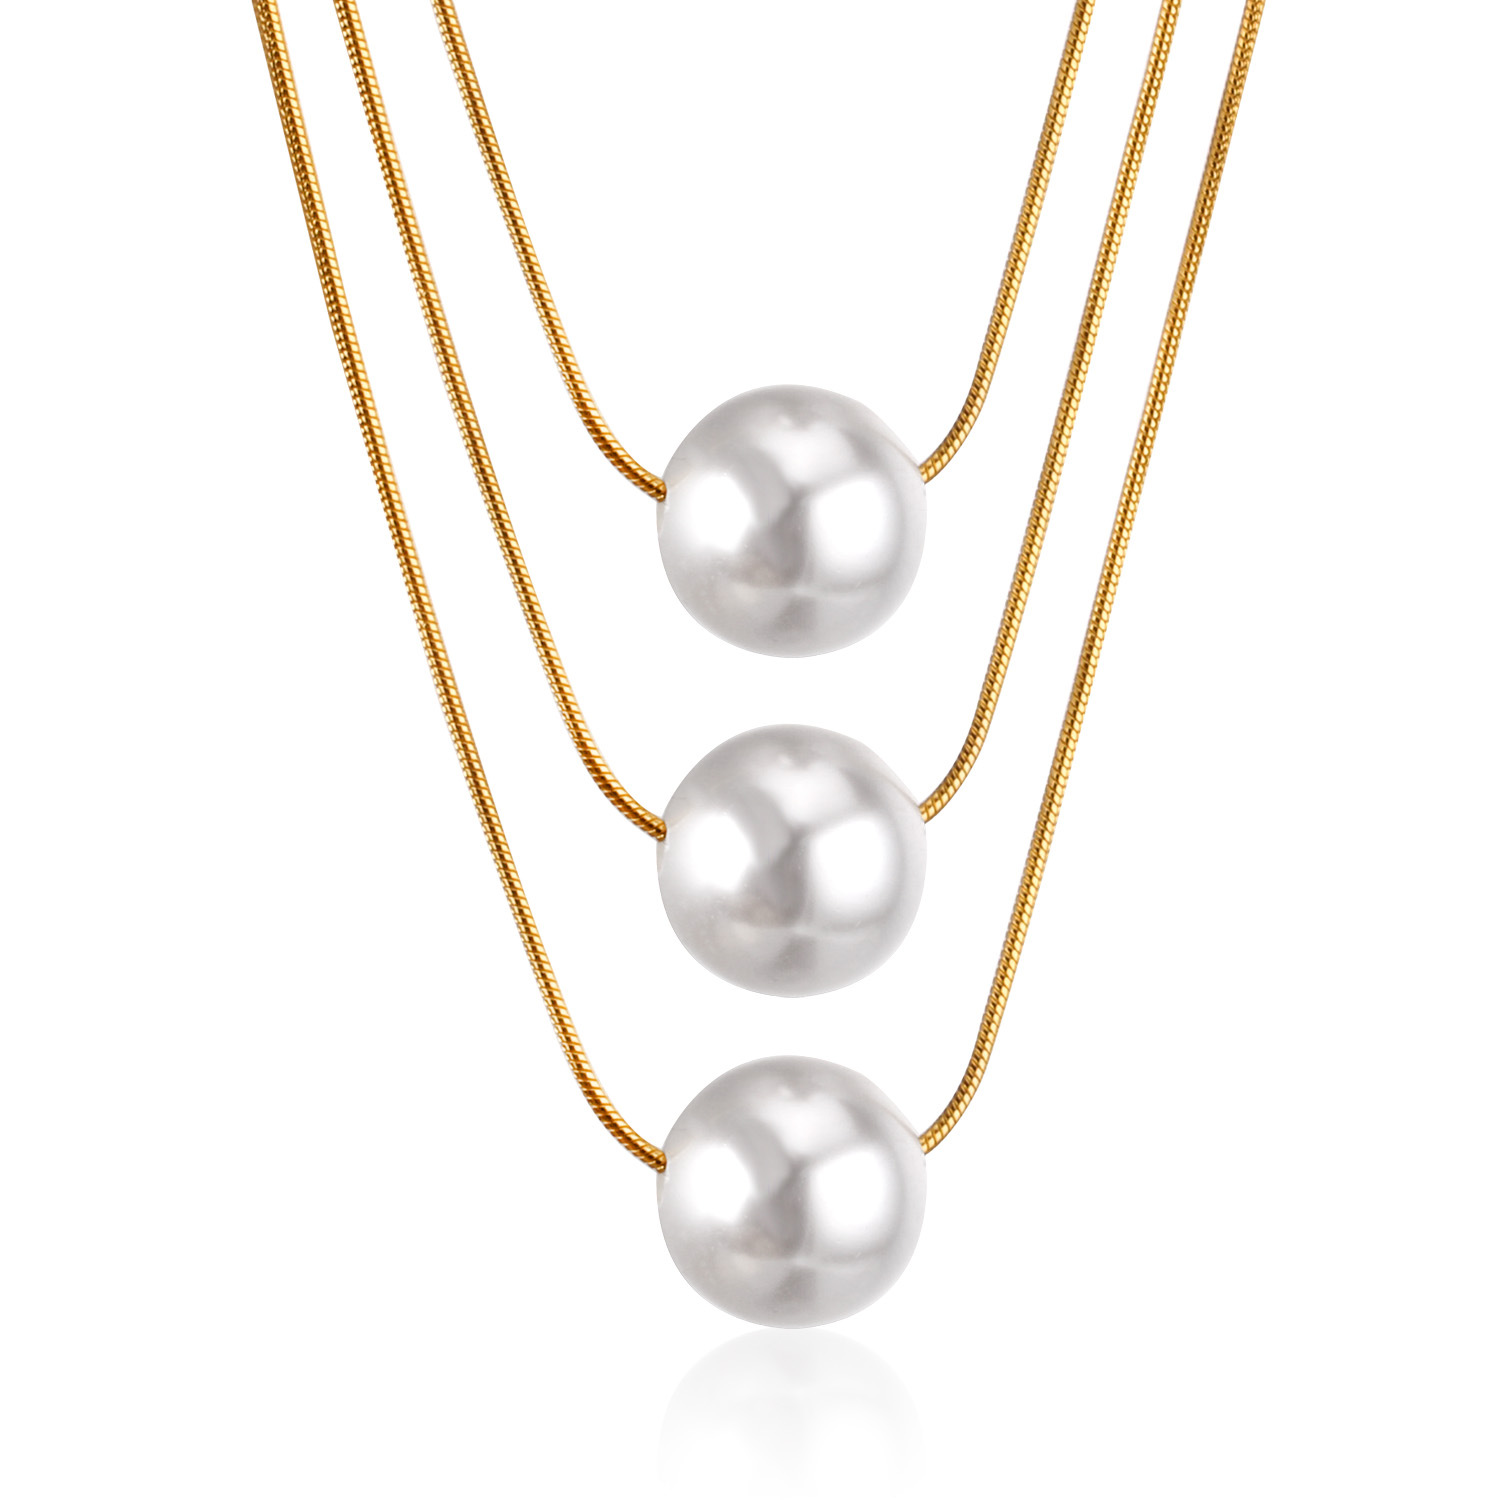 2:golden triple pearl